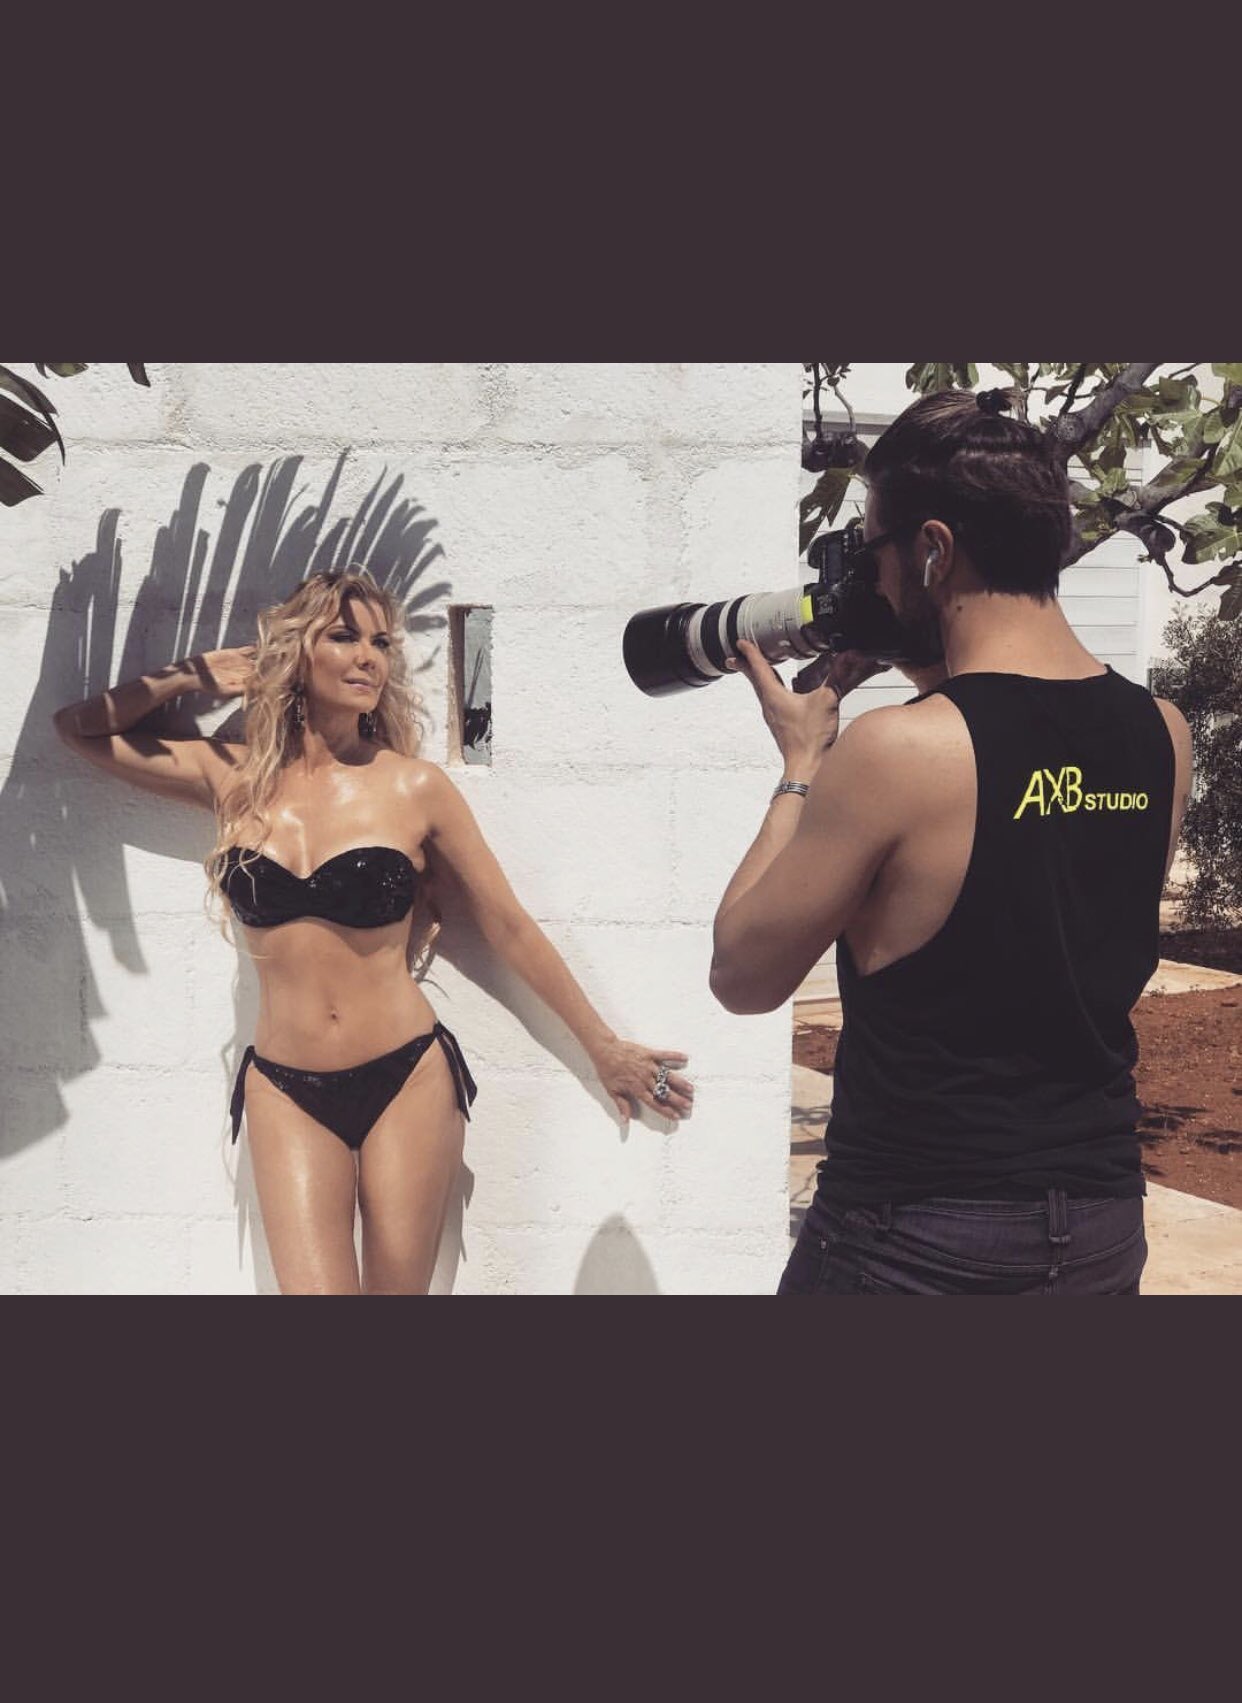 Katherine Kelly Lang on X: "Photo shoot for beachwear #salsedinebyKKL  @BELLIPRODUCTION https://t.co/IXC2y7o2LG" / X